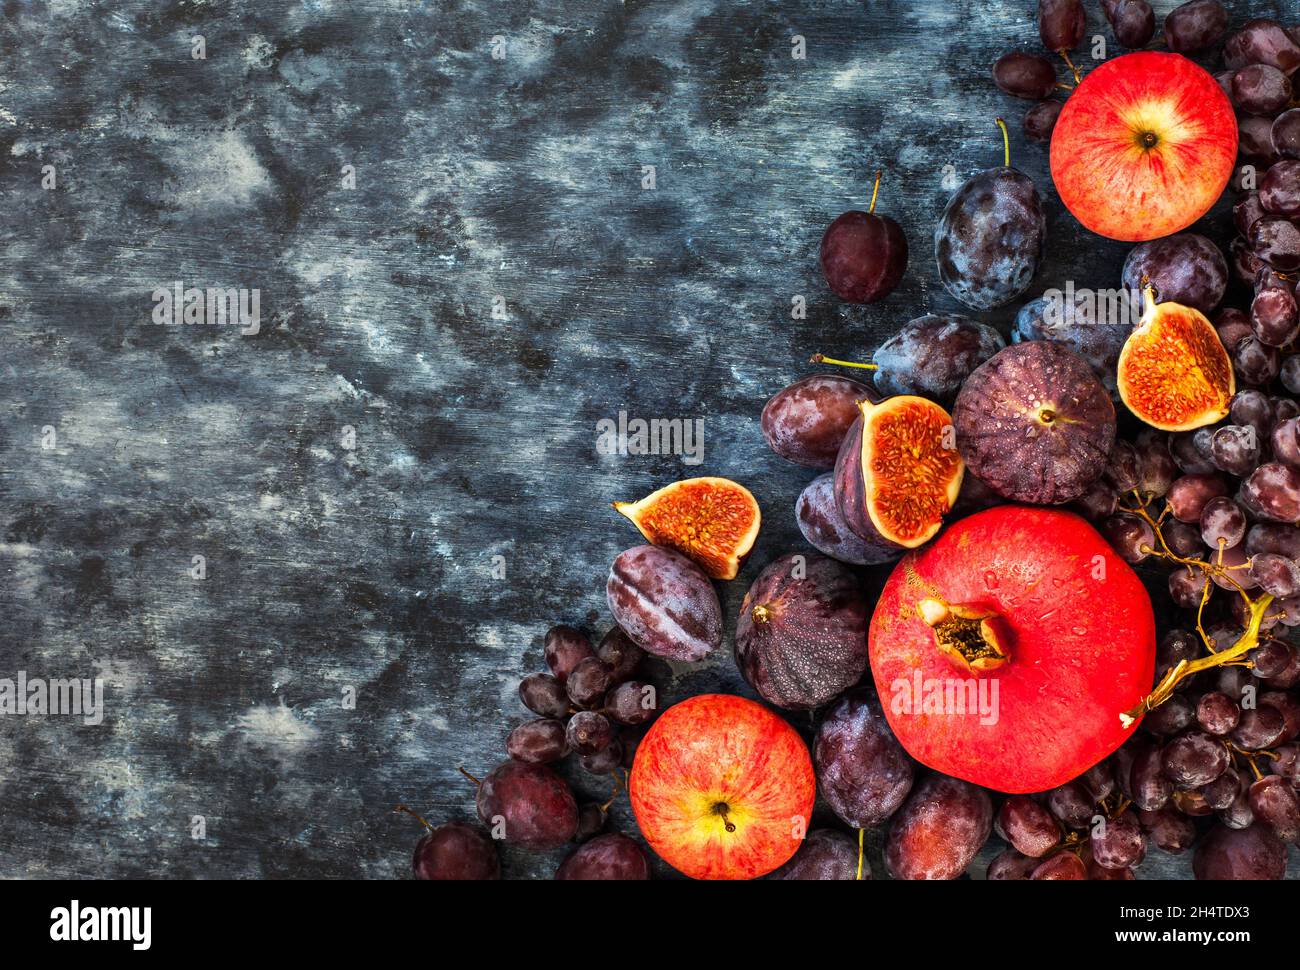 Frutta fresca d'autunno - fichi, prugne, uva e melograno, vista dall'alto Foto Stock